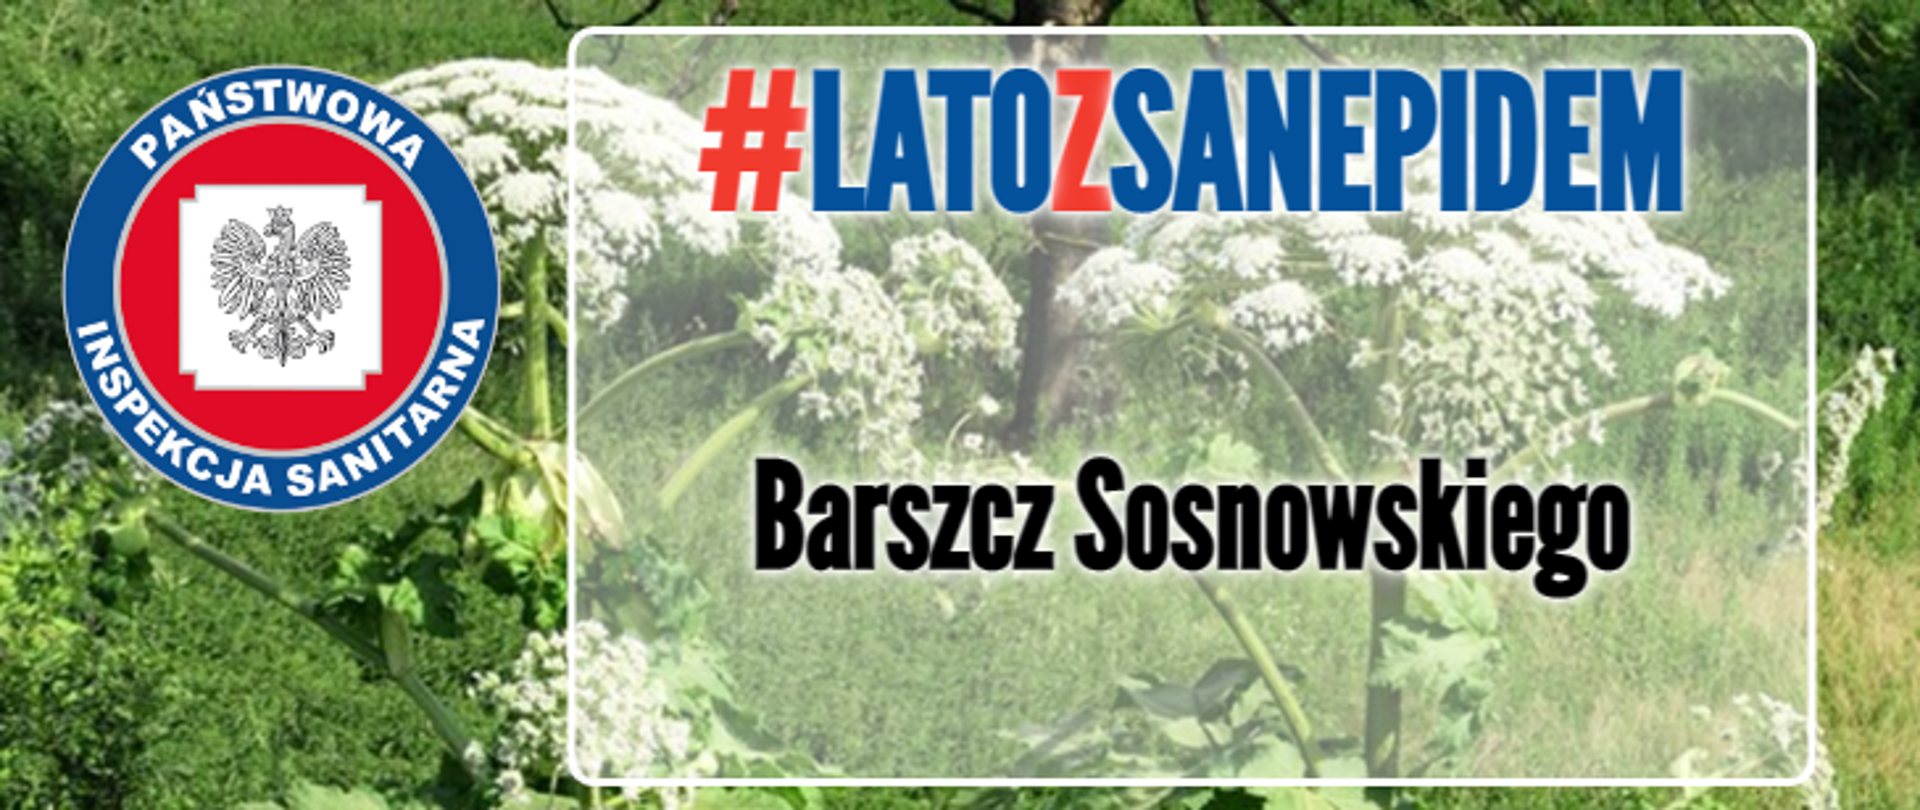 Barszcz sosnowskiego #latozsanepidem